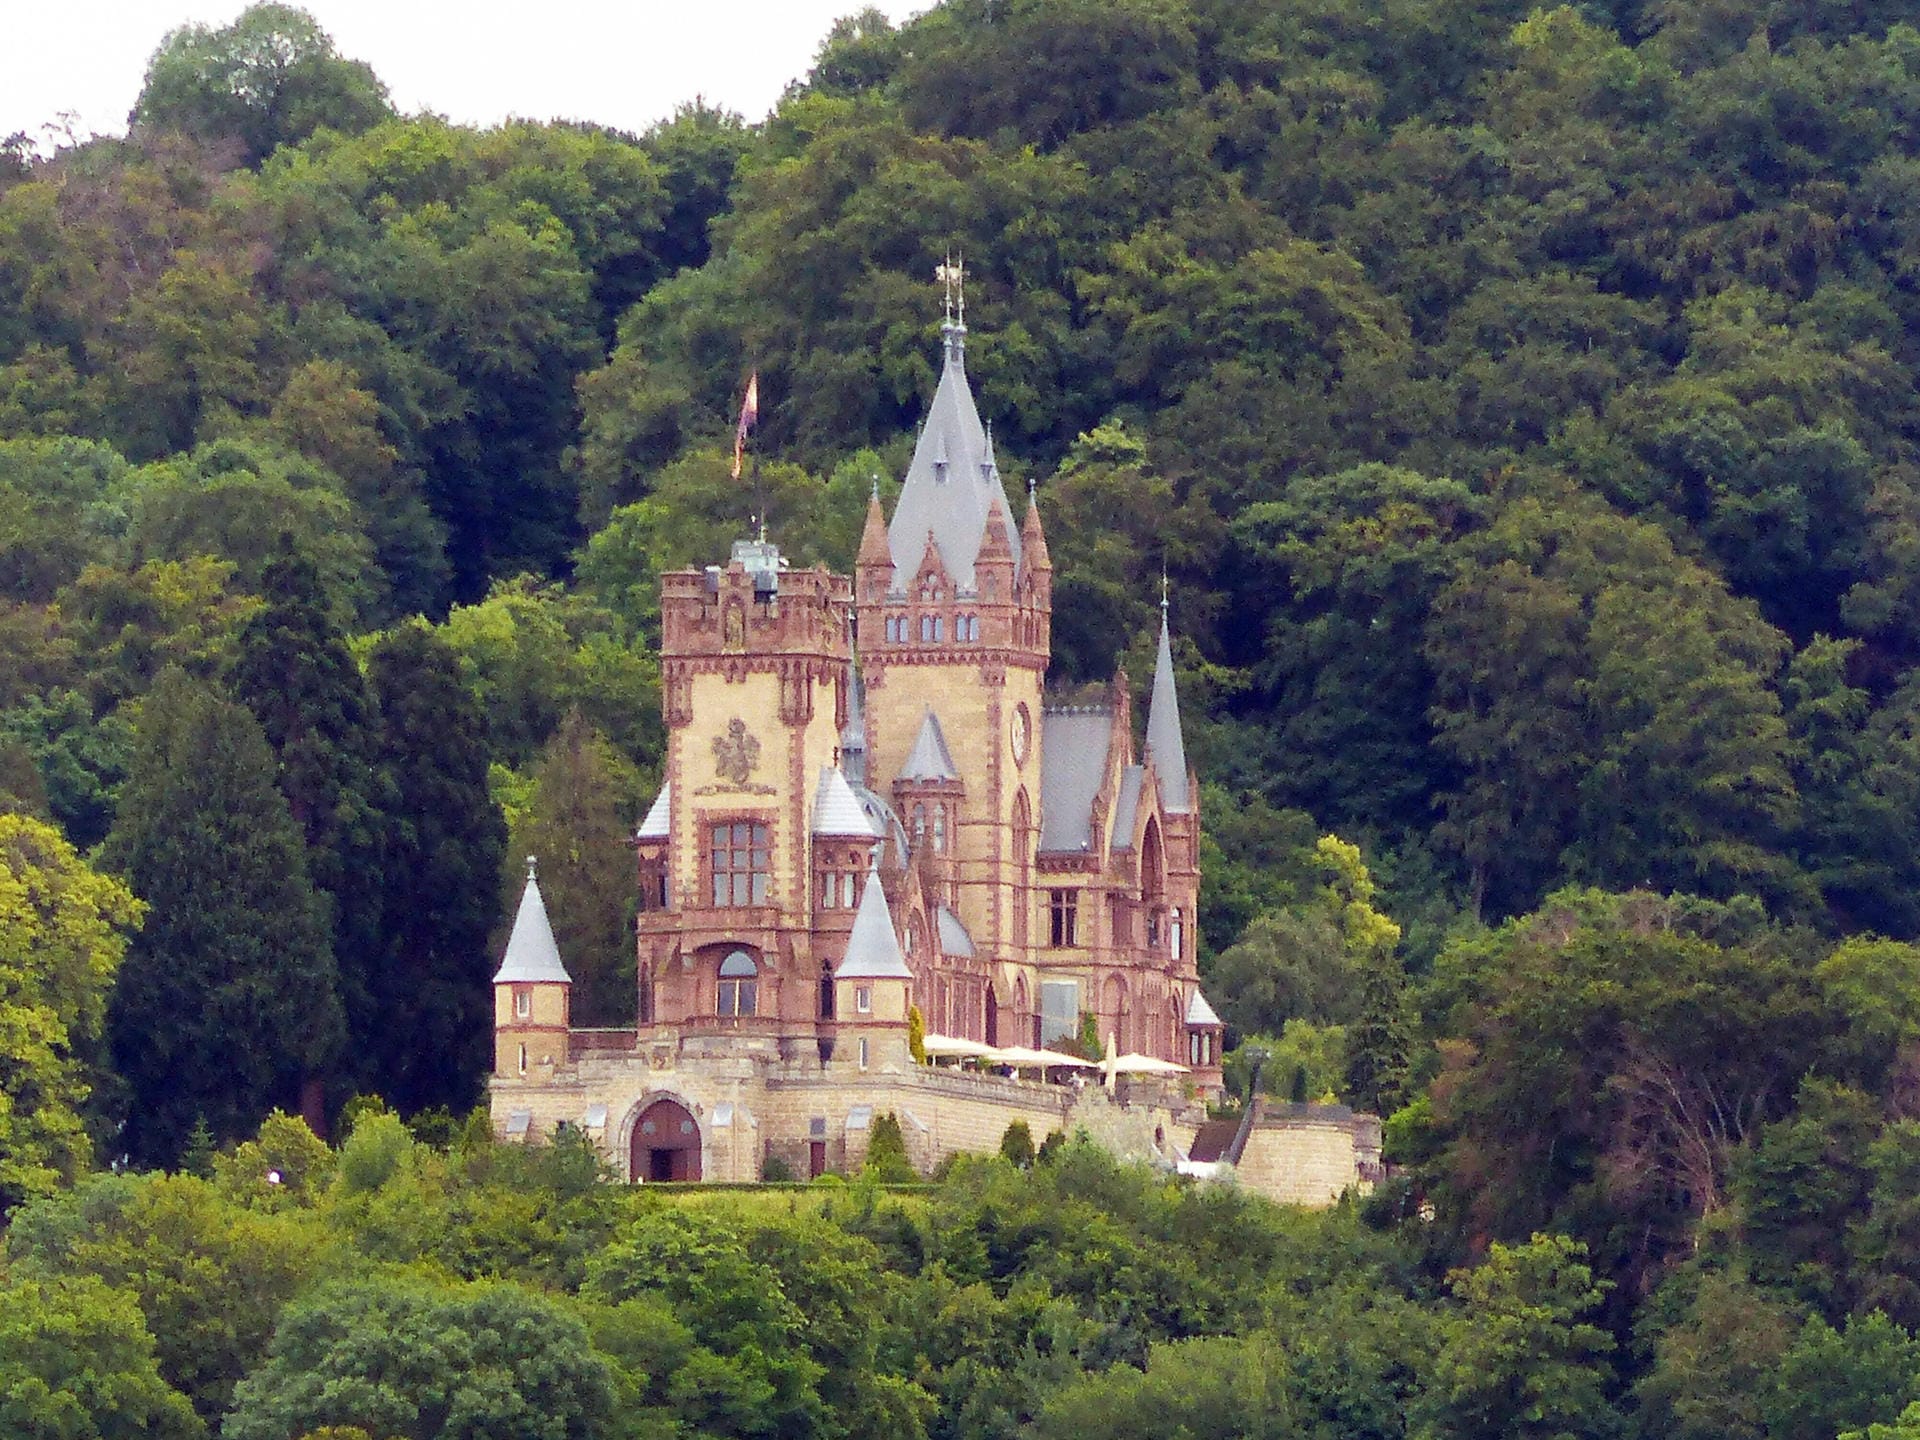 Das Schloss Drachenburg in Königswinter in Nordrhein-Westfalen: Es entstand in den Jahren 1882 bis 1884, wurde von seinem Erbauer Stephan von Sarter aber nie bewohnt. Ein Besuch dort lohnt sich vor allem in Kombination mit einer Wanderung durchs Siebengebirge.